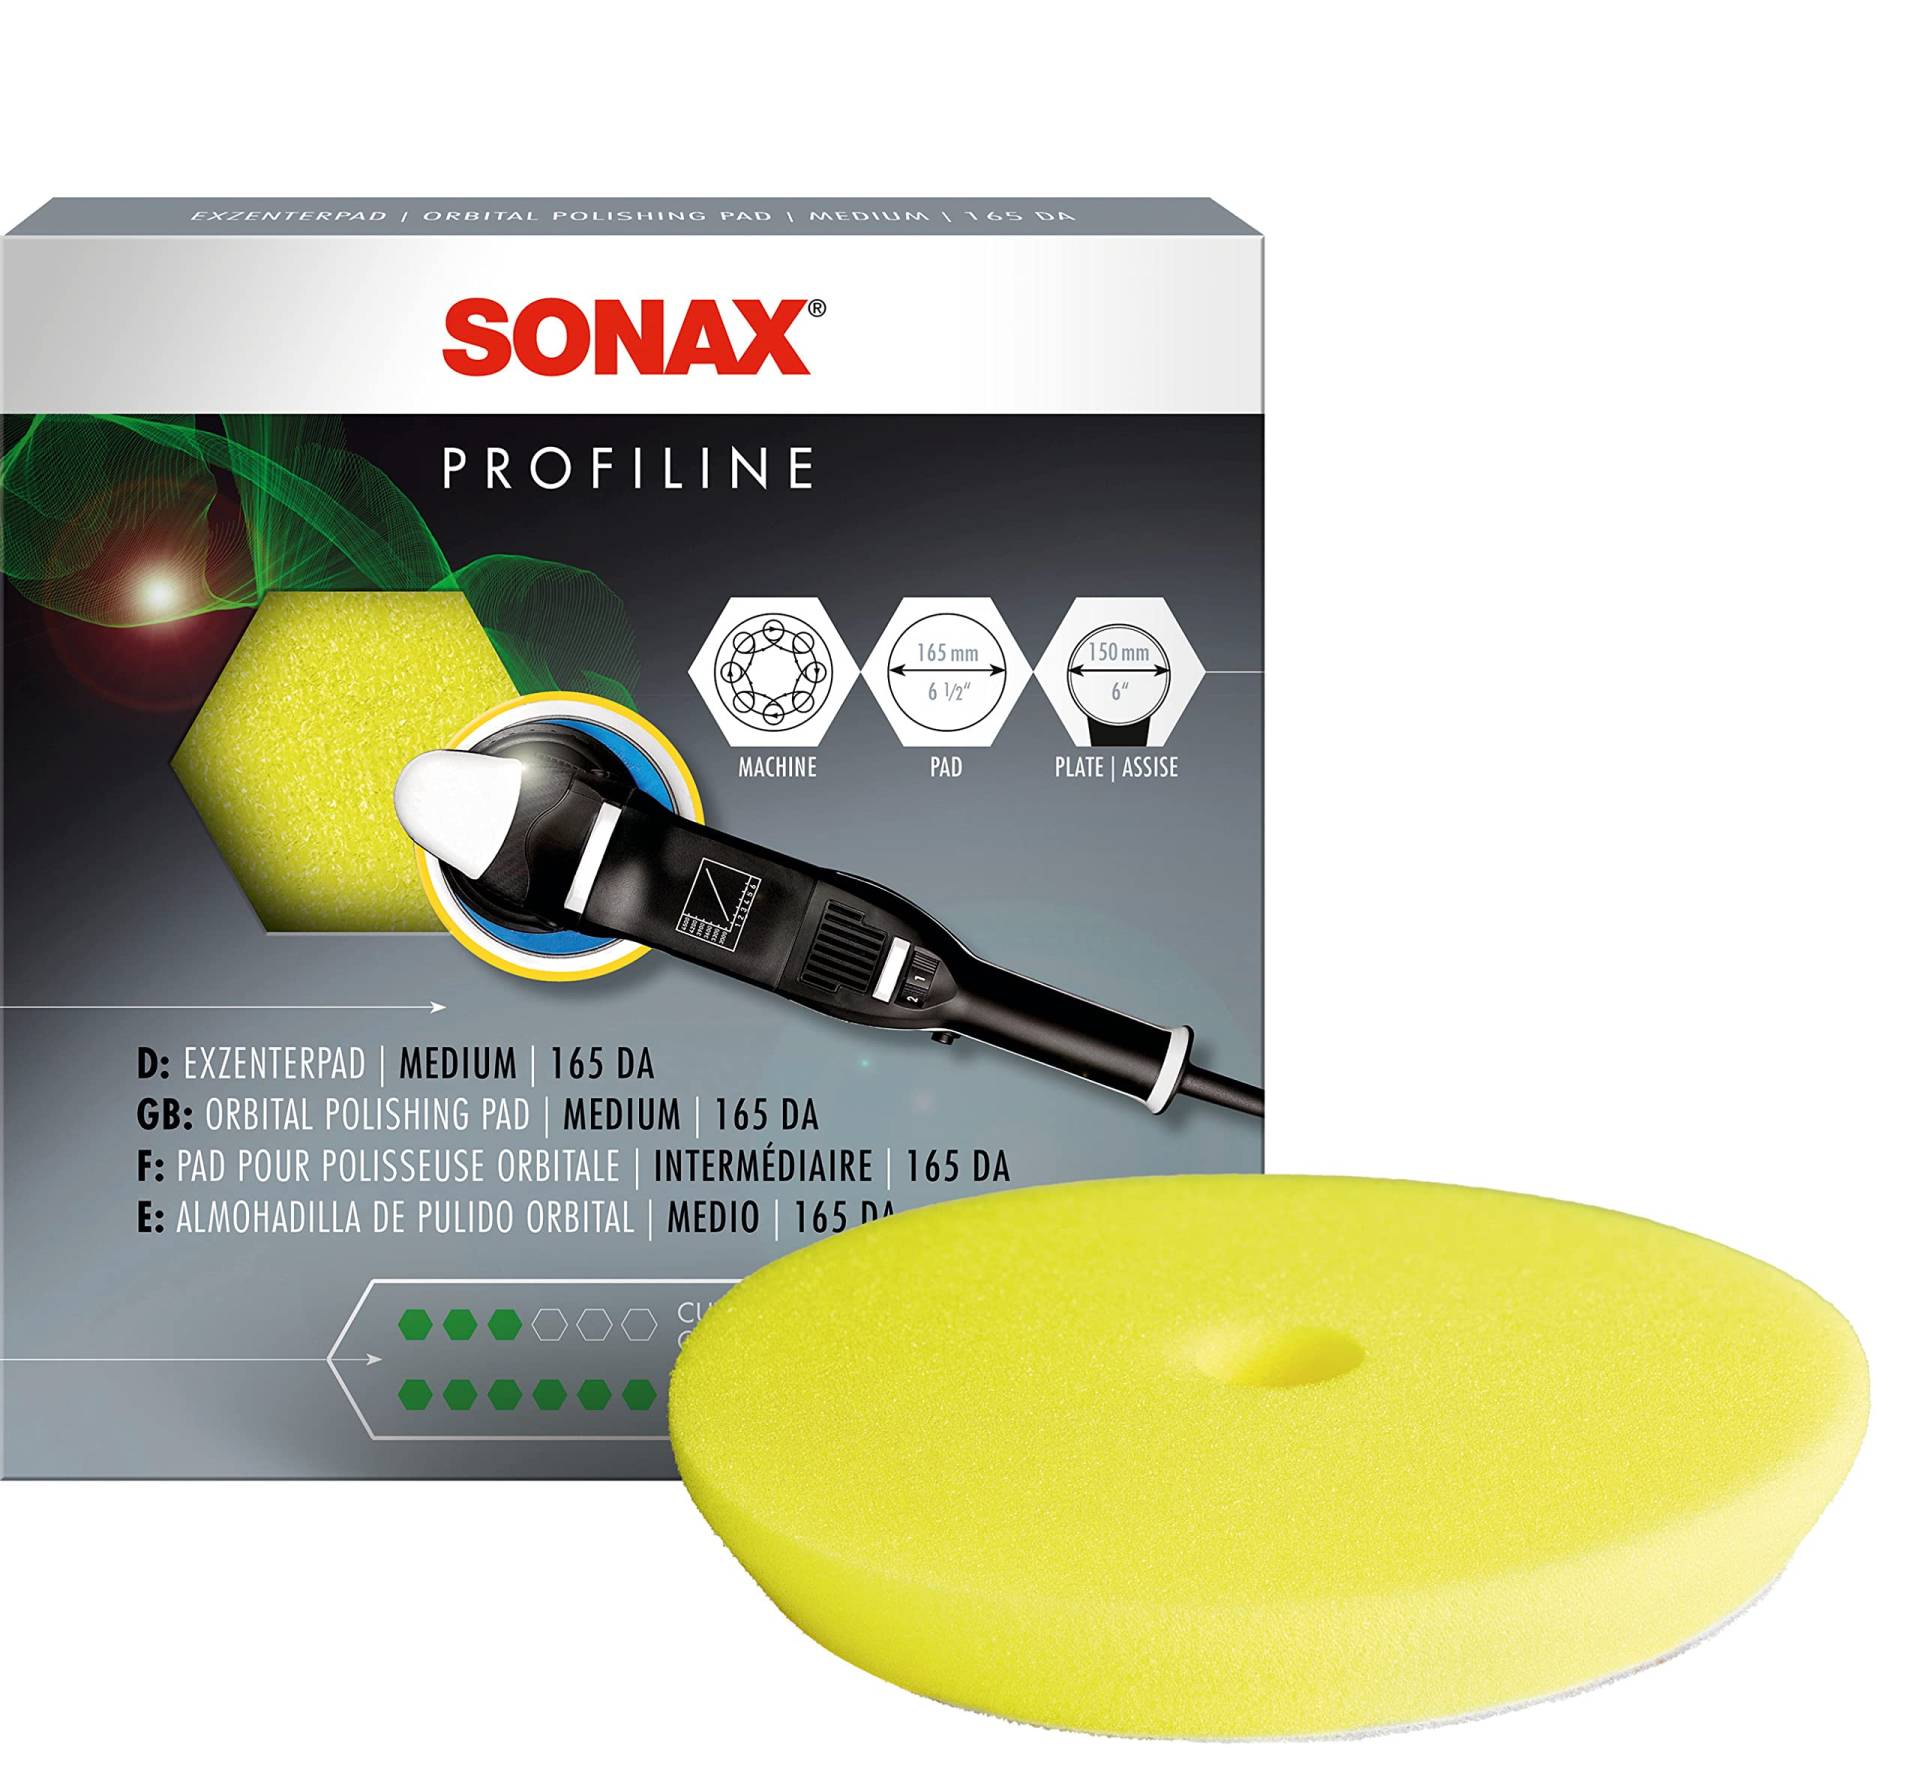 SONAX ExzenterPad medium 165 DA (1 Stück) Polierscheibe für Verwendung im letzten Arbeitsschritt zum Hochglanzfinish, Art-Nr. 04935000 von SONAX